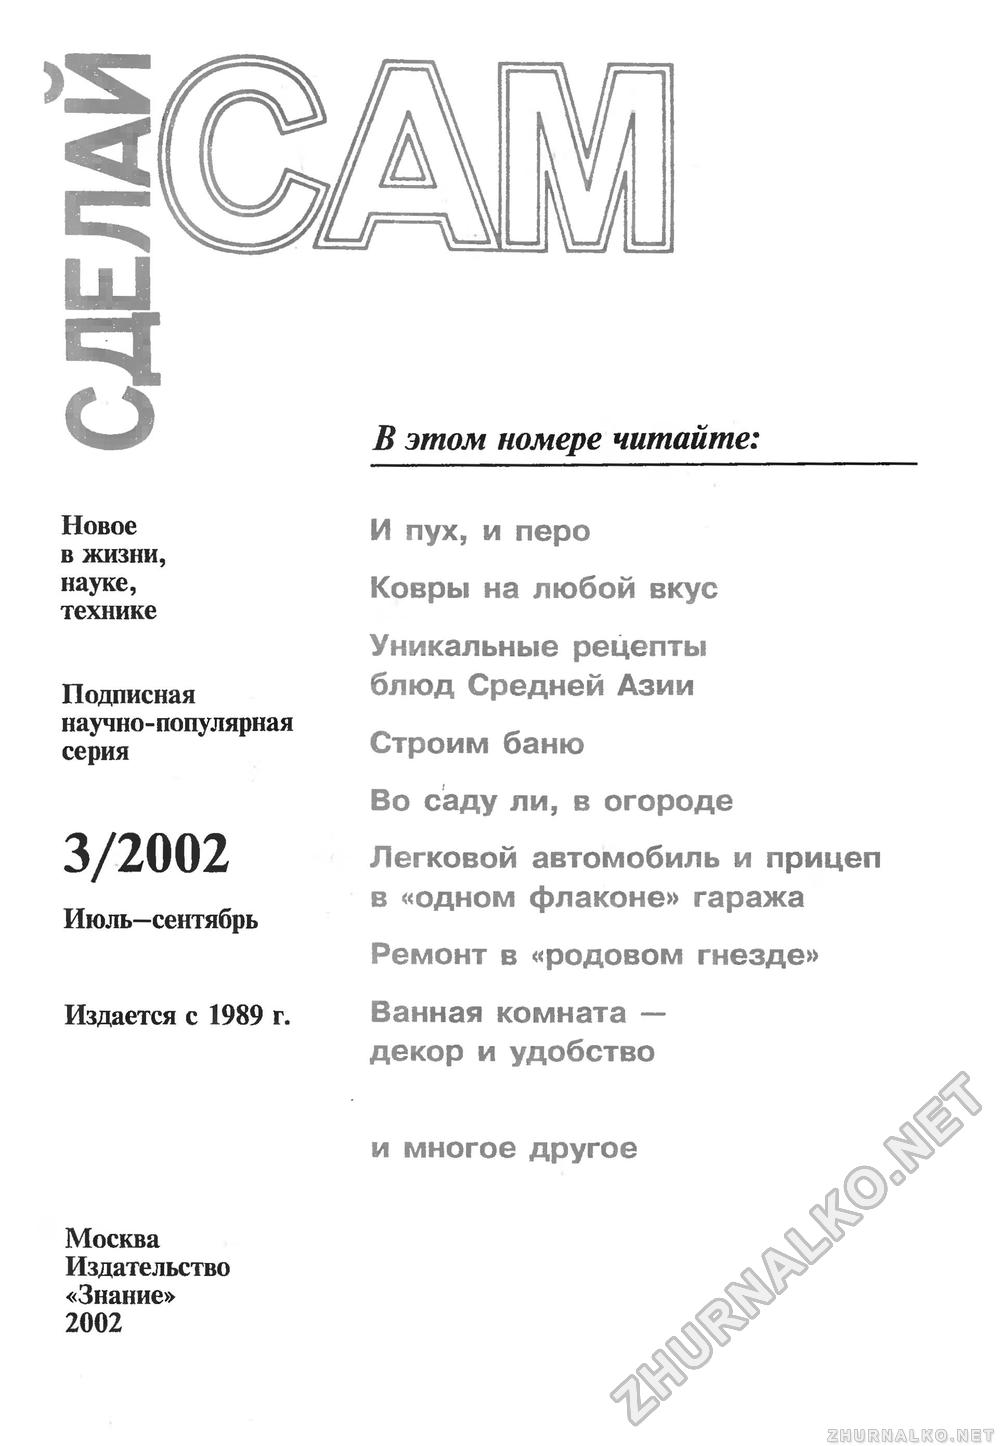   () 2002-03,  3